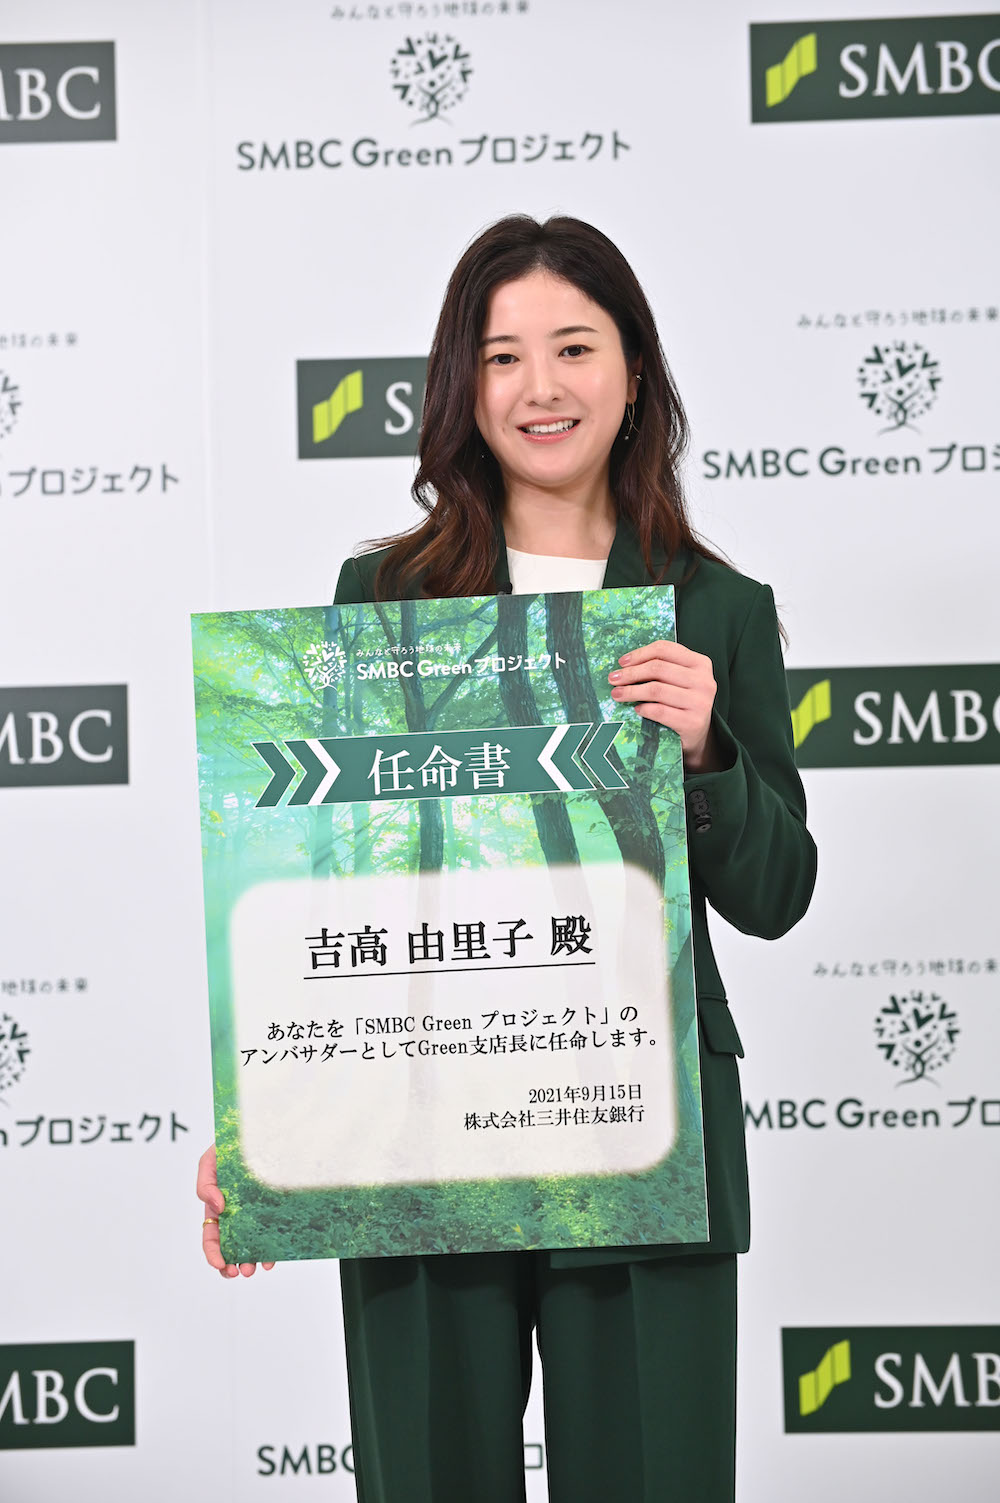 吉高由里子／三井住友銀行（SMBC）の「SMBC Green プロジェクト」発表会